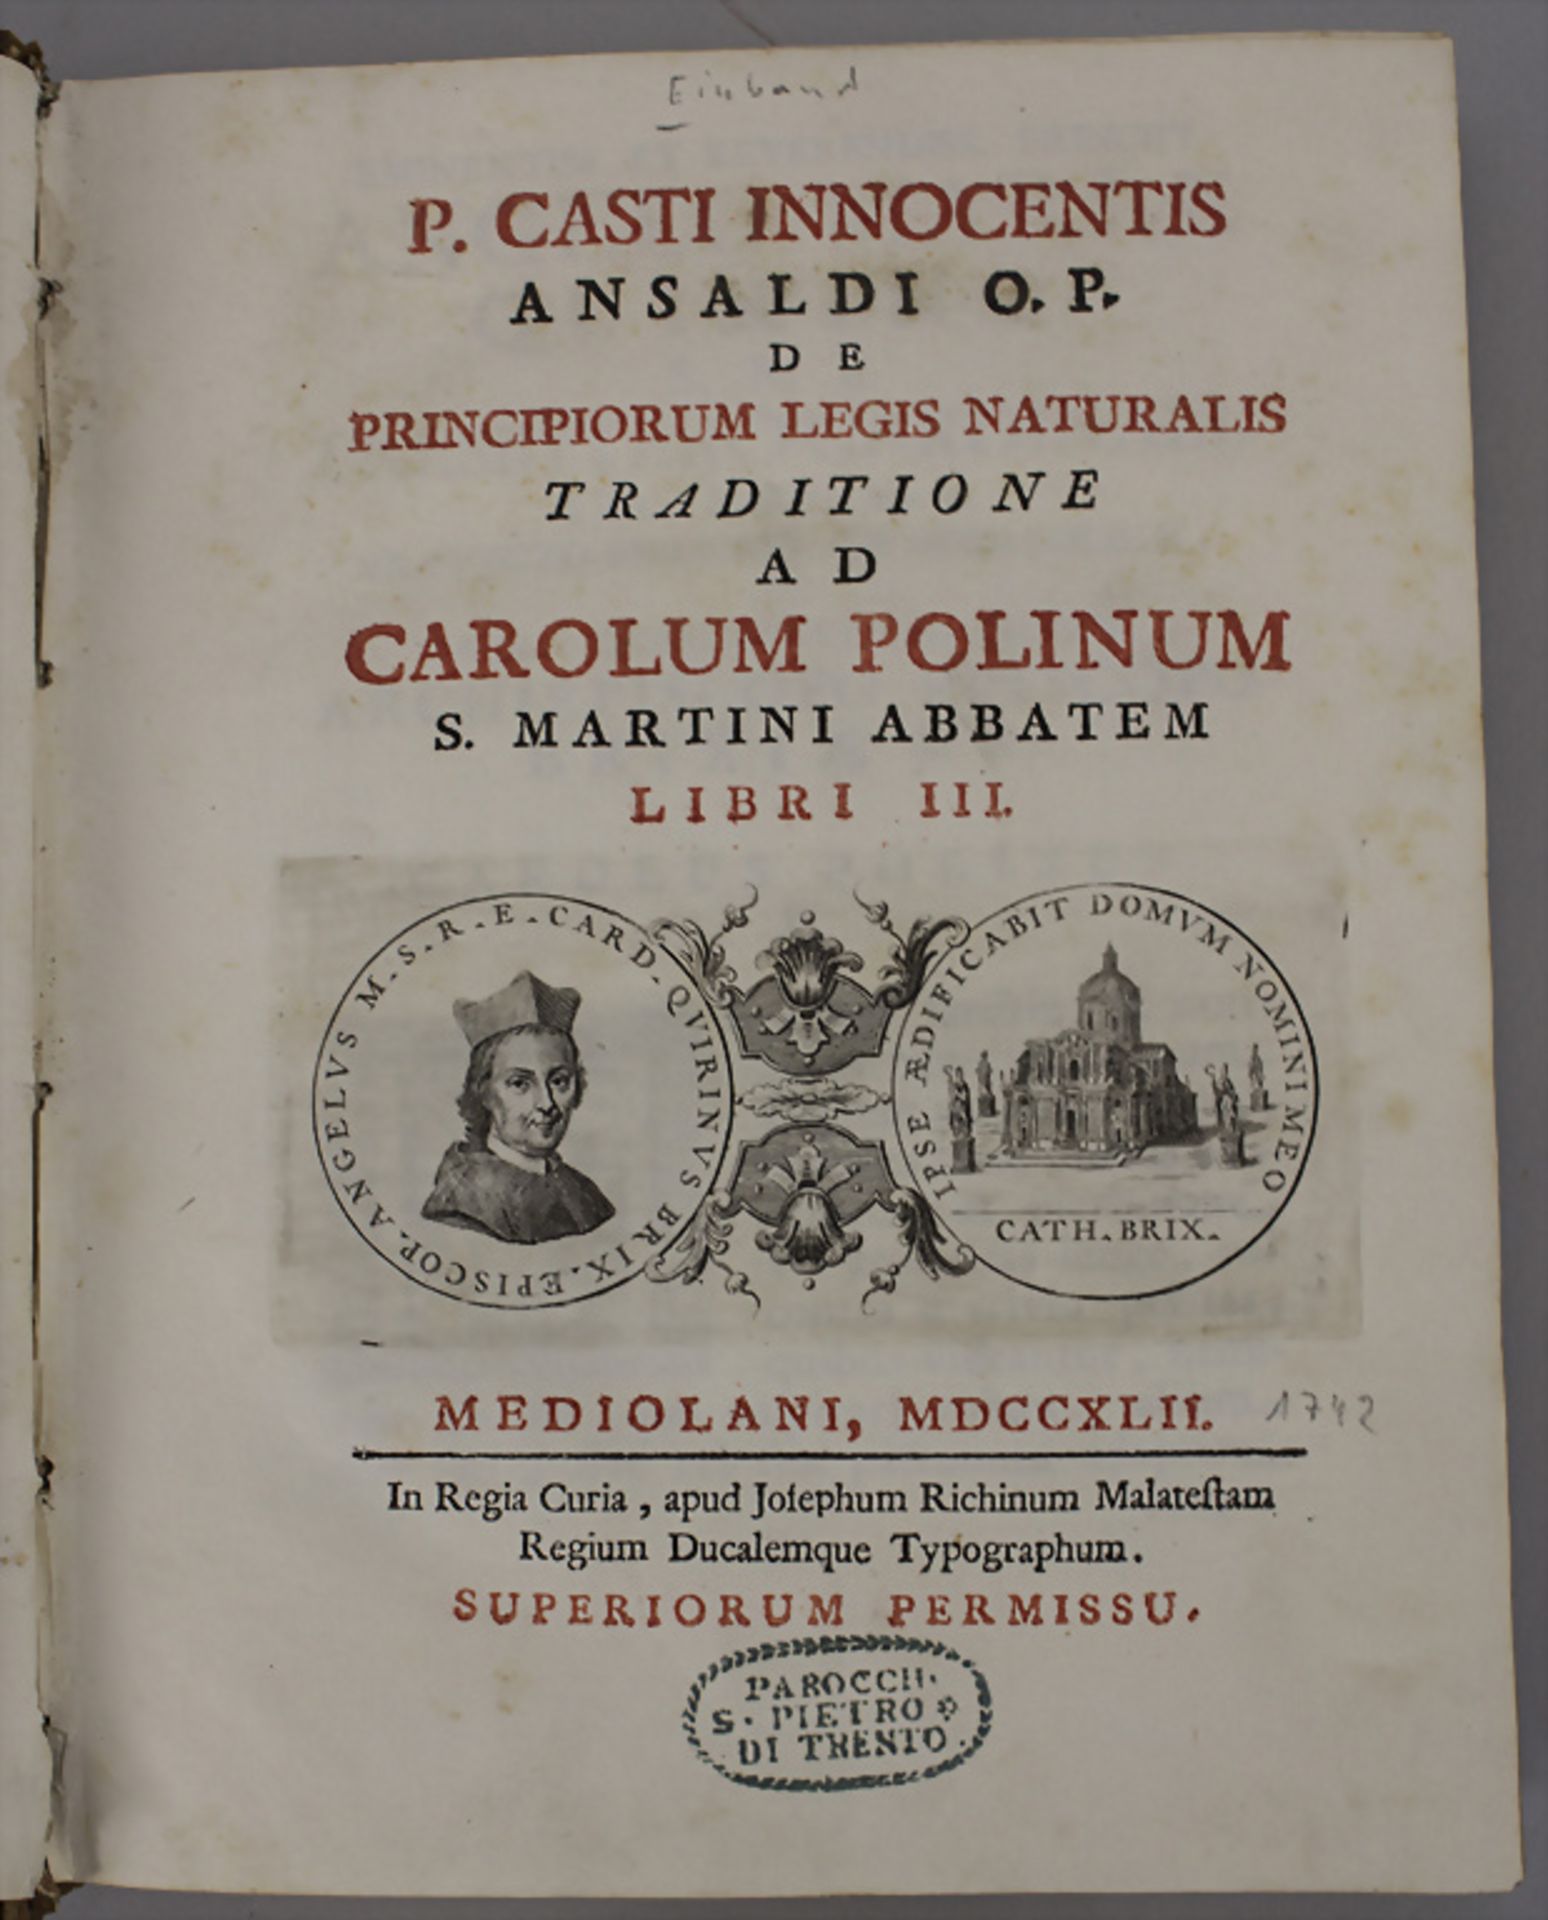 P. Casti Innocentis Ansaldi O.P.: 'De principiorum legis naturalis traditione', Drittes Buch, ...